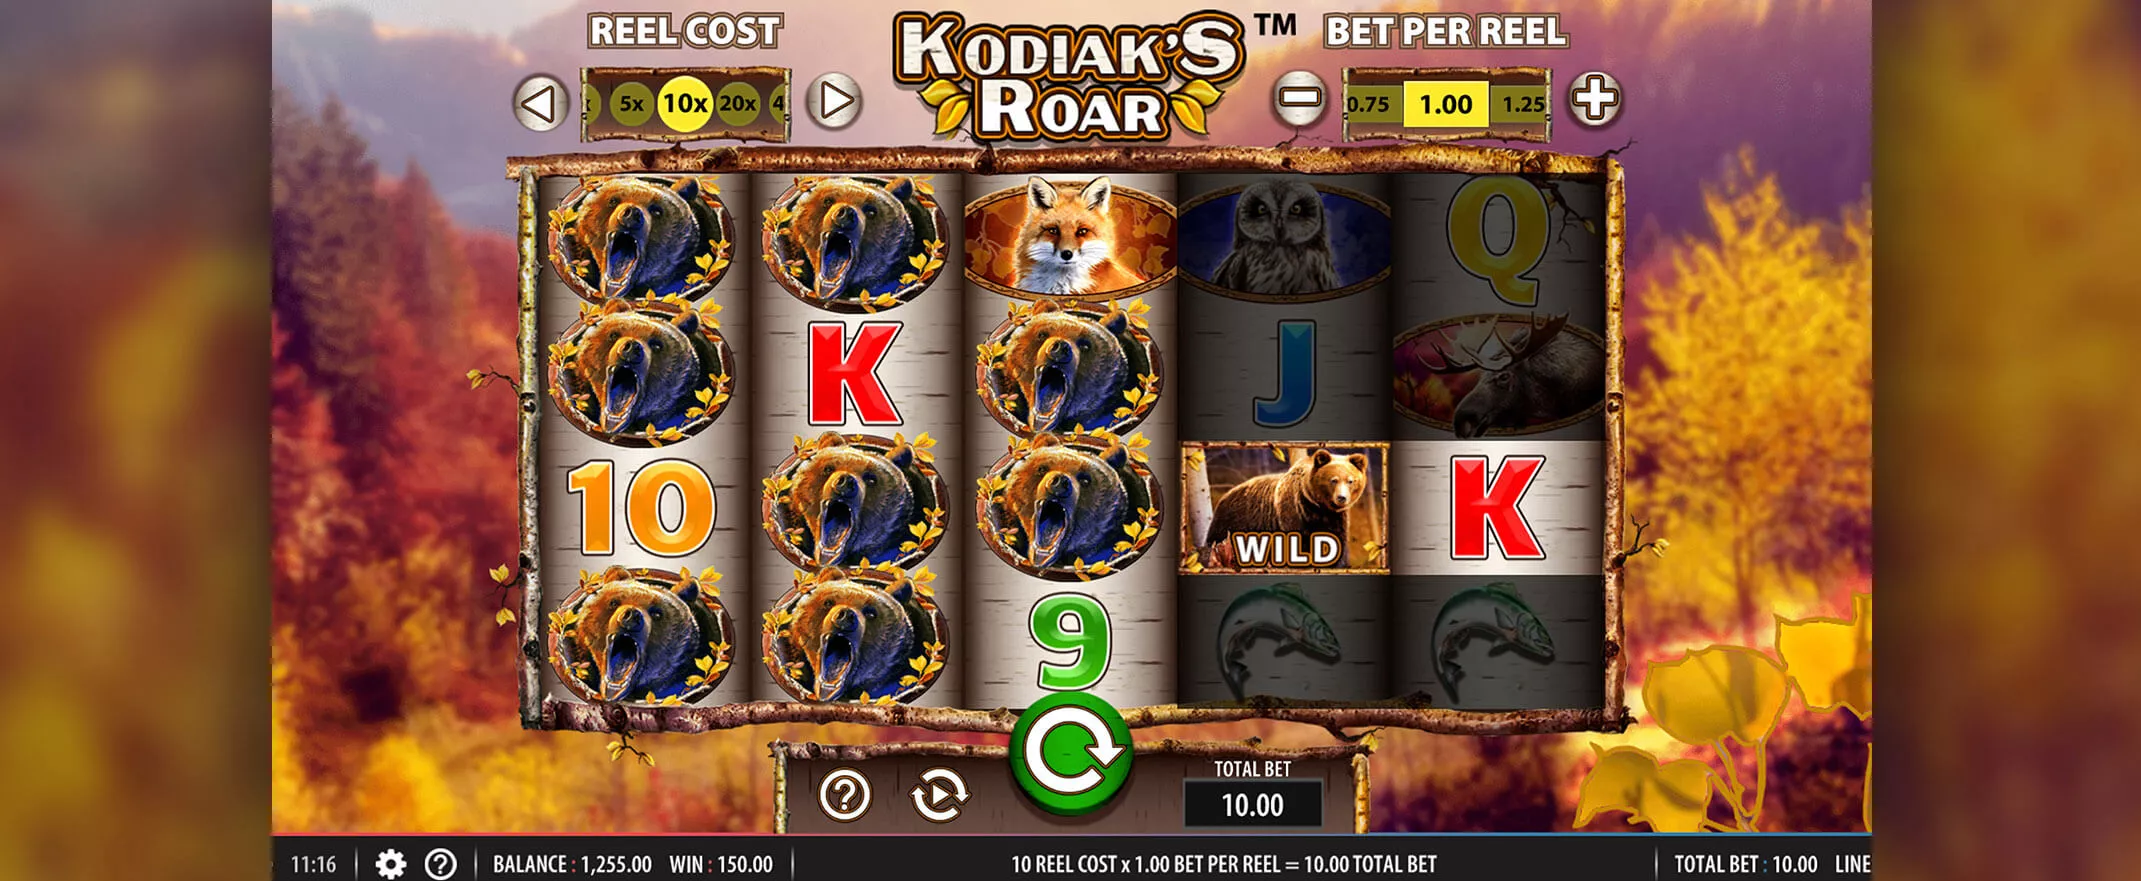 Kodiak's Roar slot screenshot